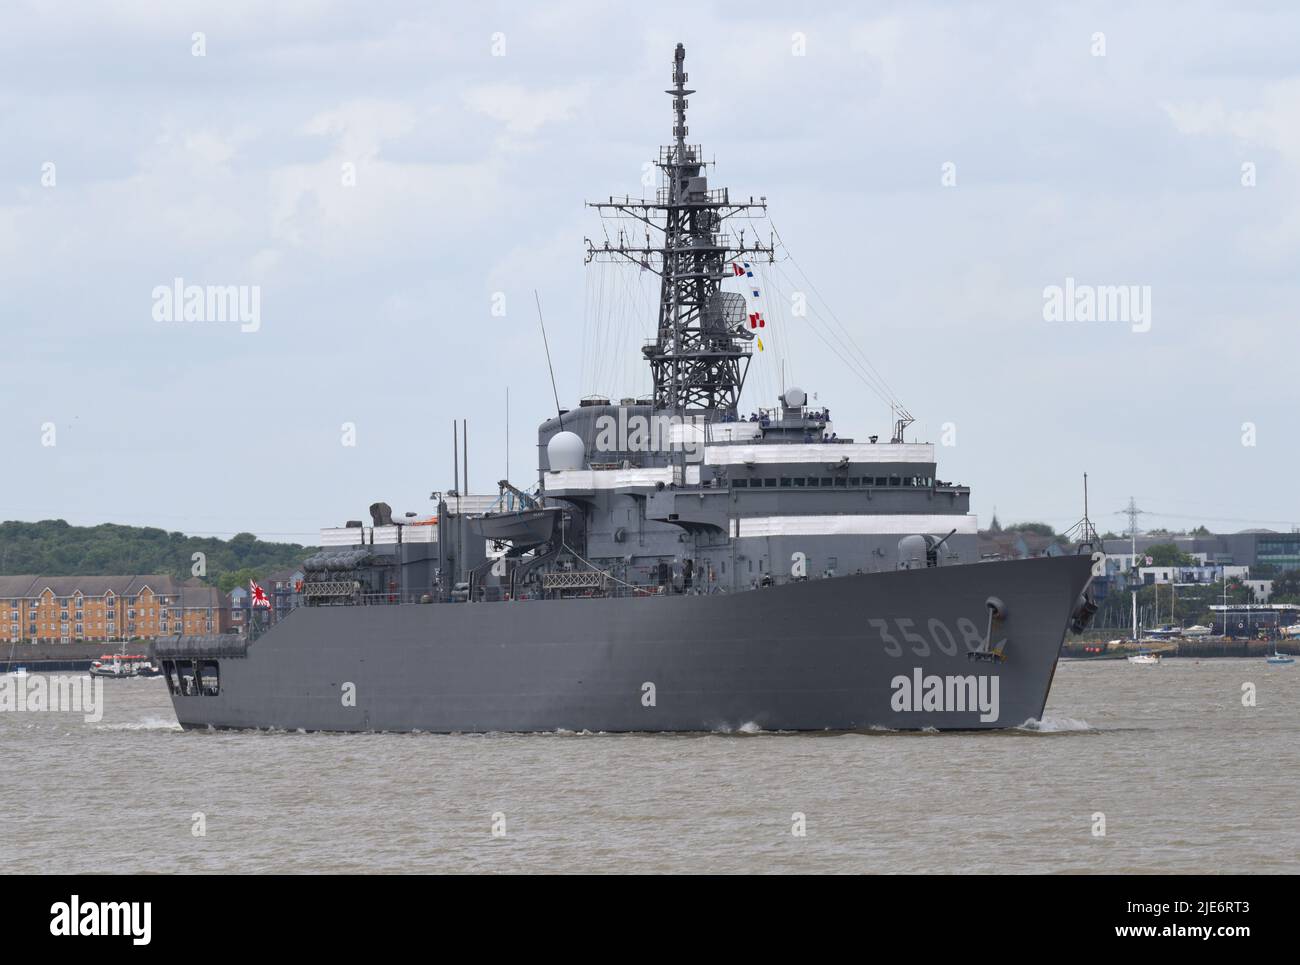 25/06/2022 Tilbury Reino Unido Dos buques de la Fuerza de Autodefensa Marítima de Japón visitaron el sudeste la semana pasada. El buque de entrenamiento JS Kashima estaba amarrado junto al HMS Foto de stock